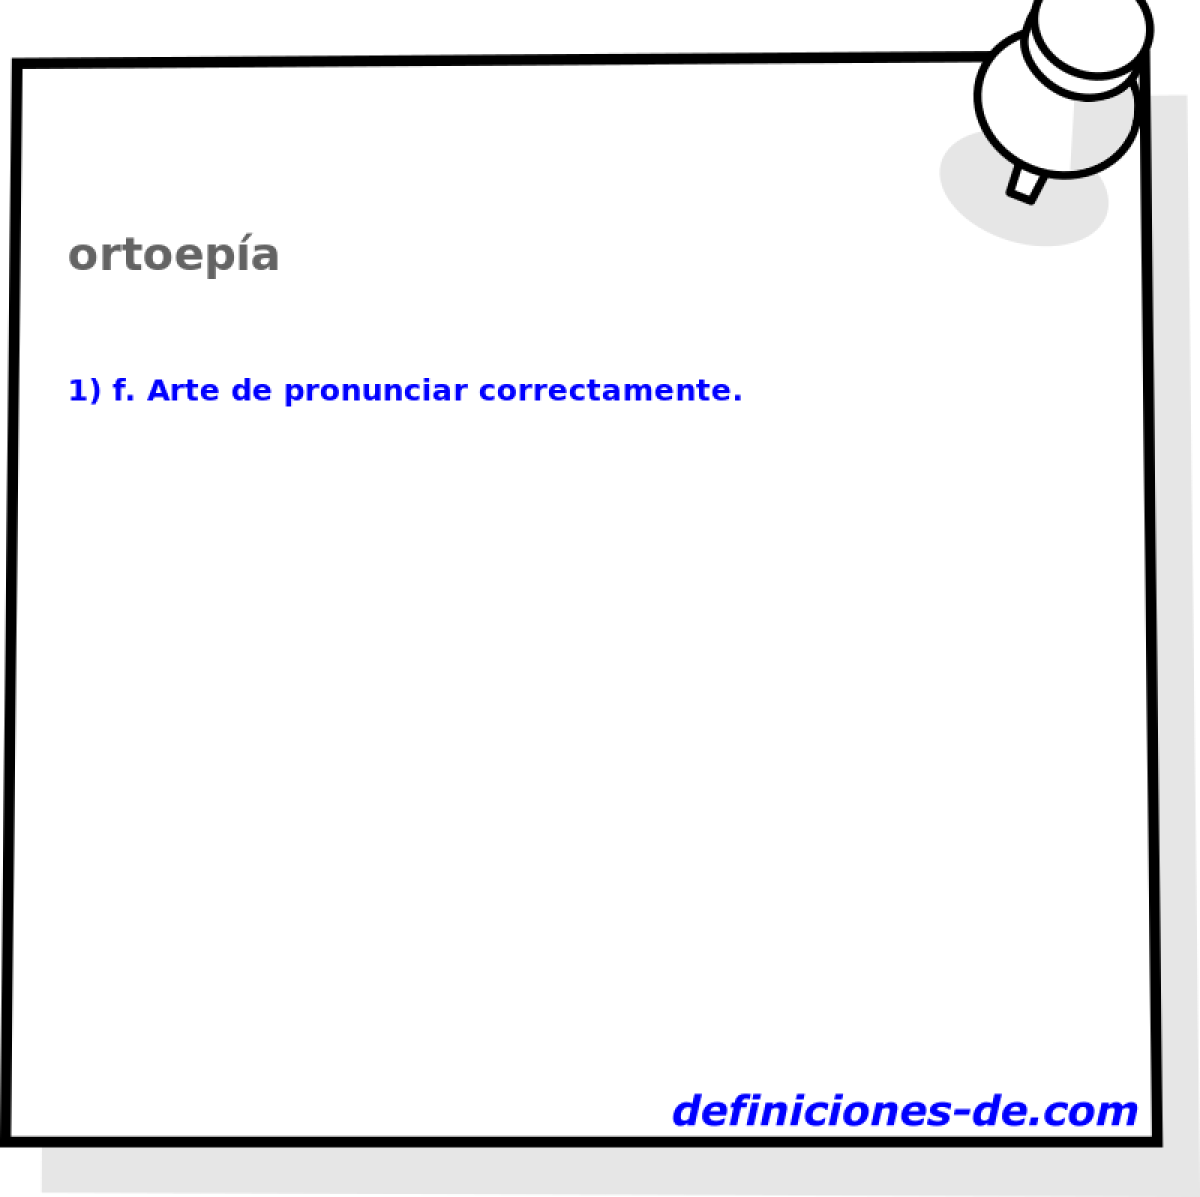 ortoepa 